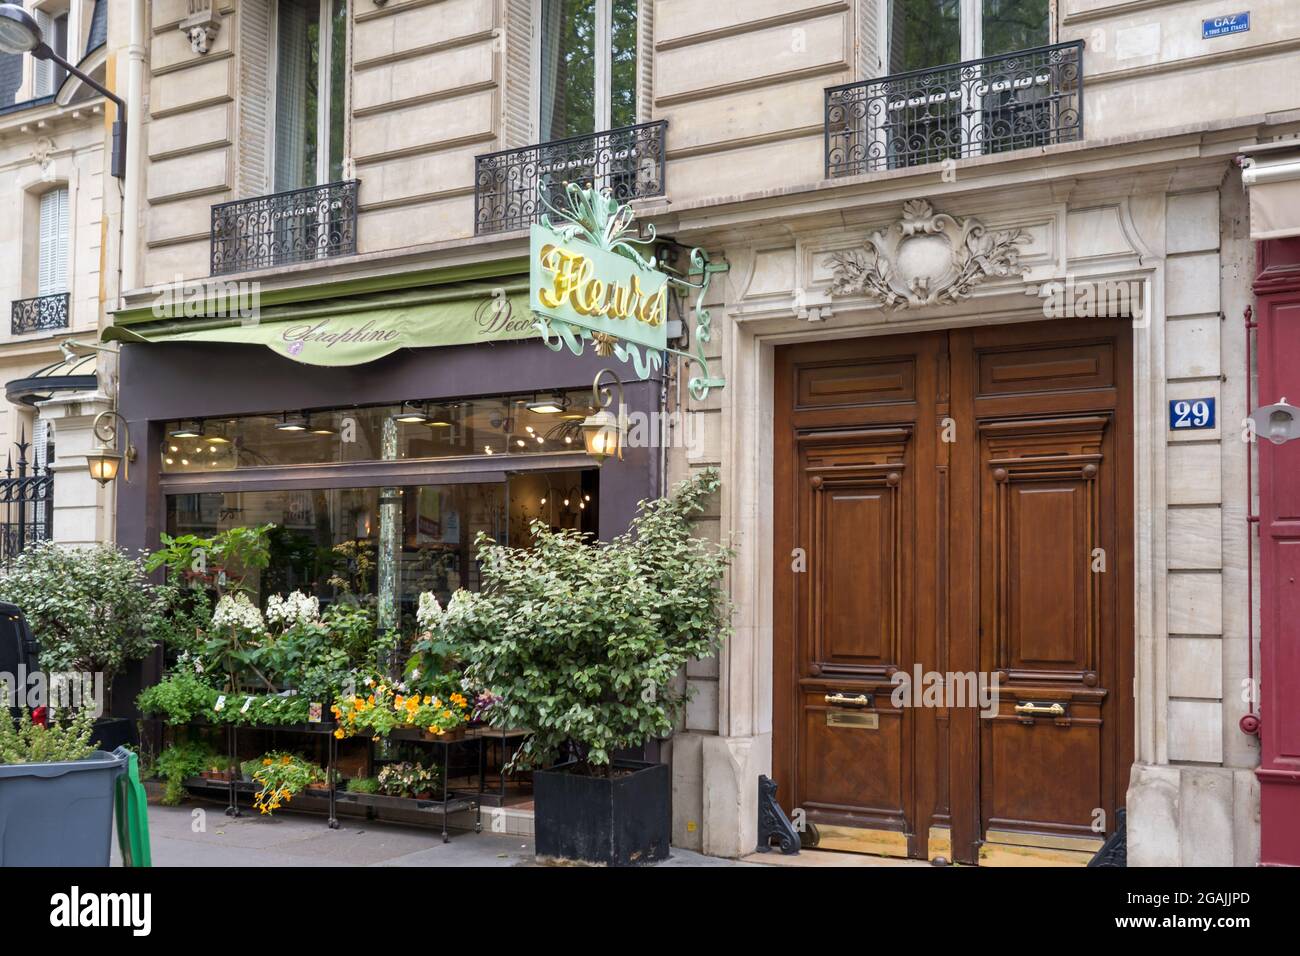 PAR, FRANCE - 08 juillet 2021: Une belle façade de magasin de Seraphine Flower Shop avec logo de marque Banque D'Images